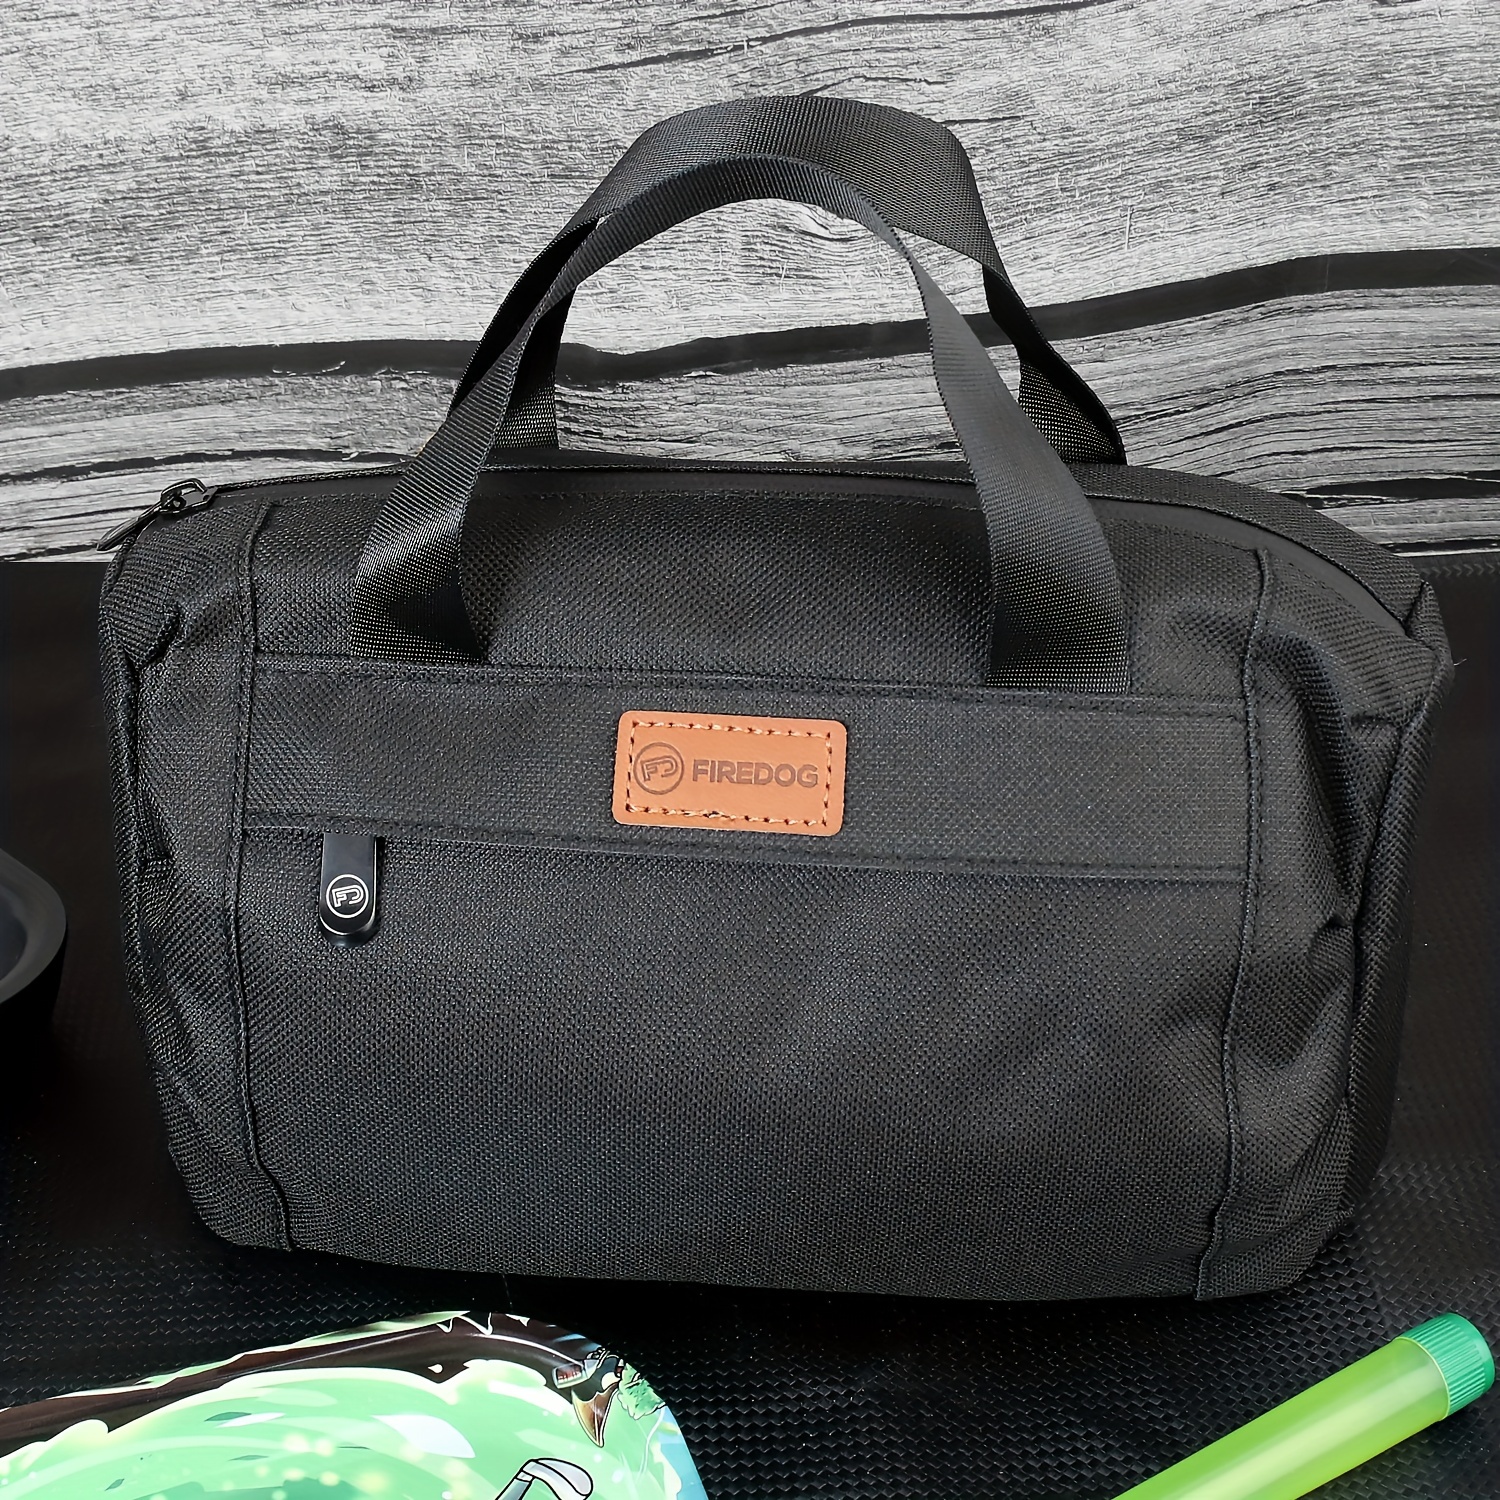 Smell Proof Back Pack Non Smelling Odorless Travel Back-pack Bag Herb  Storage Large Bag Carry on School Bag Laptop Bag 